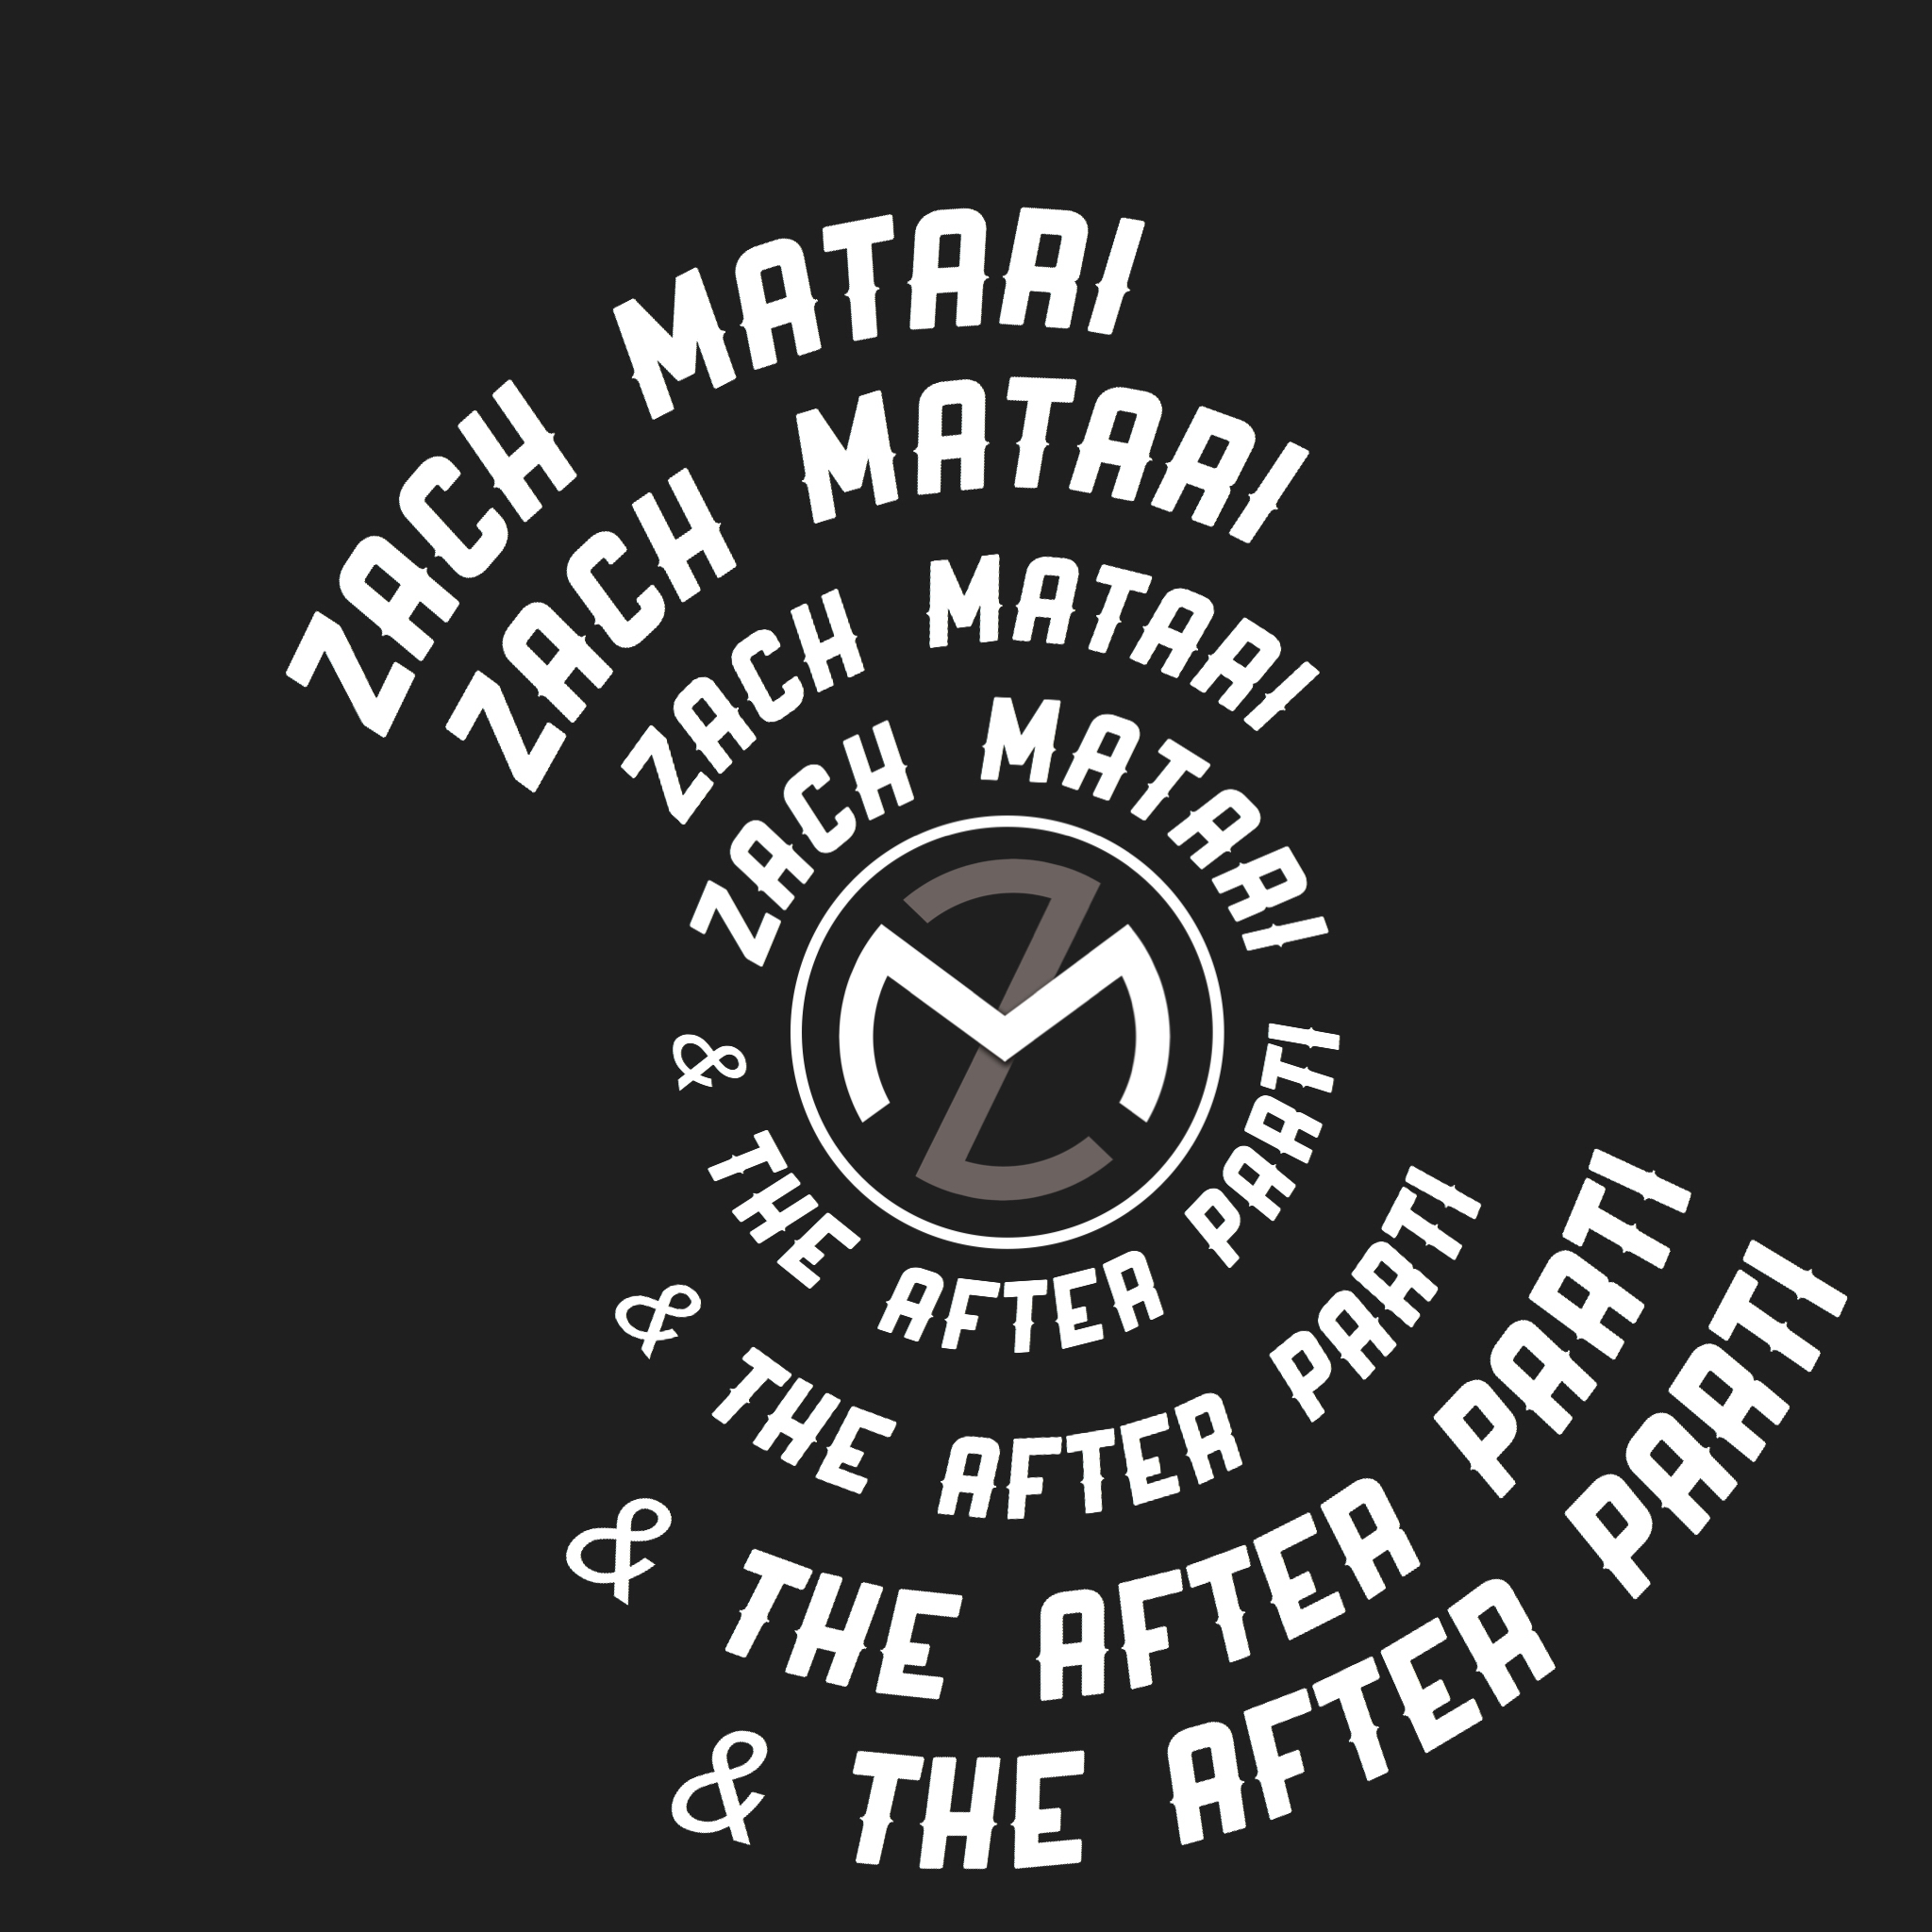 Zach Matari & After Parti Logo.JPG